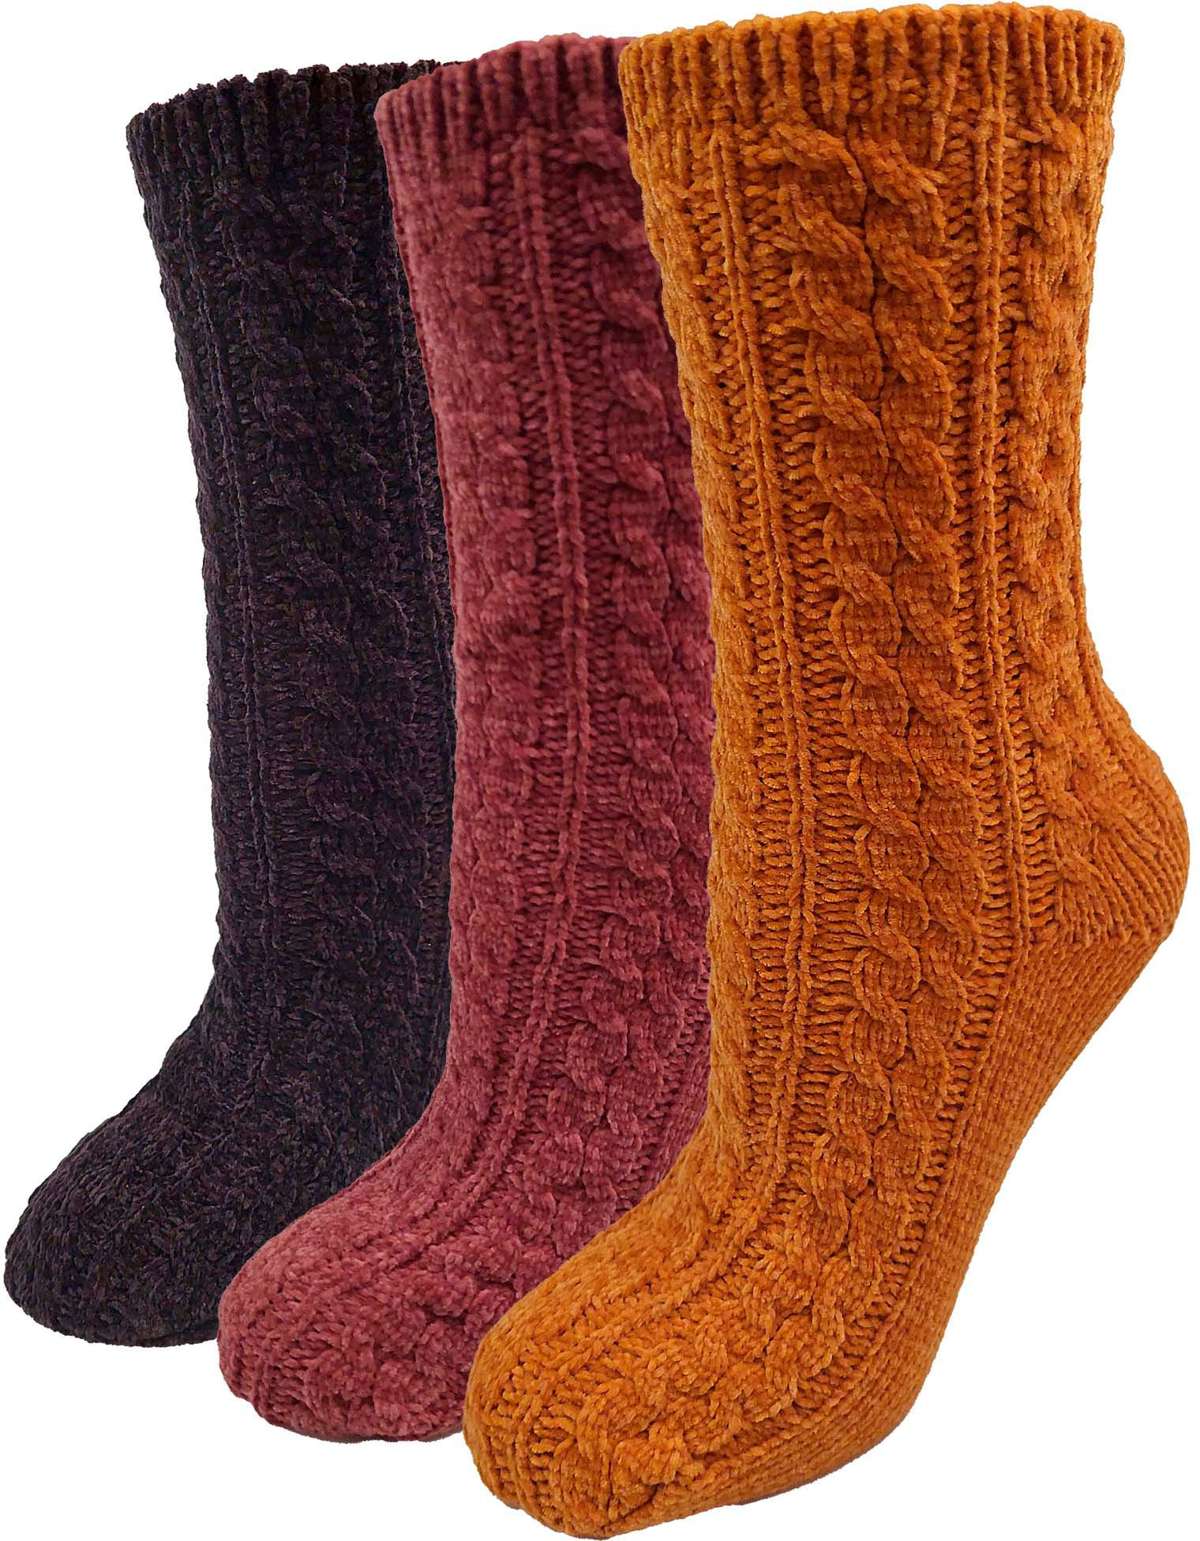 Мягкие носки, (комплект, 3 пары), с узором косы, носочки-вееры чёрный, красный, золотой